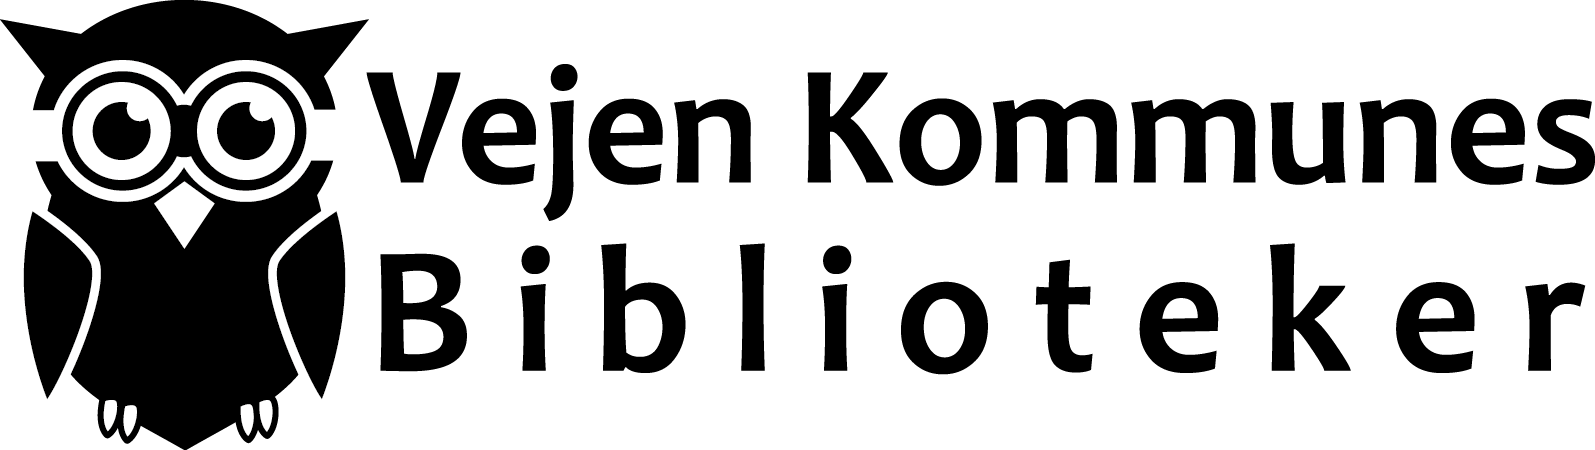 Ugle logo